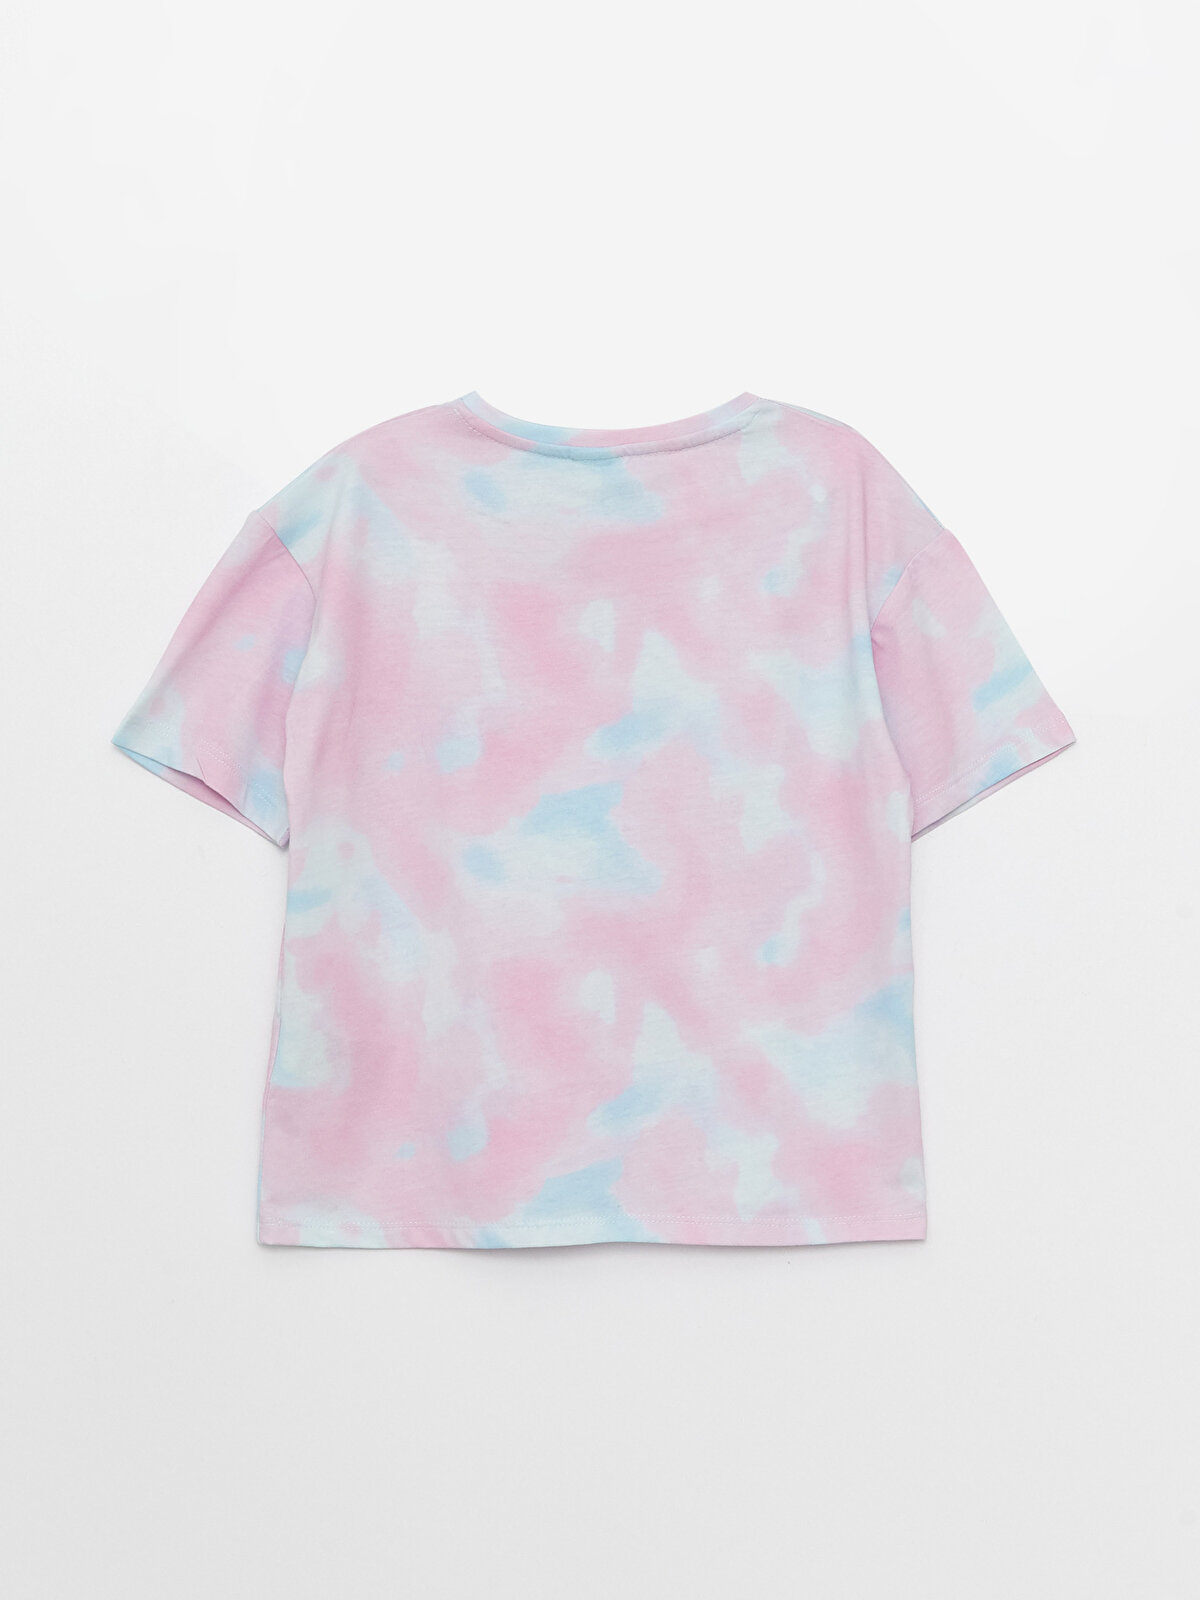 🩹[•Soft T-shirt•]🌸  Футболки для девочек, Бесплатные вещи, Розовые стразы